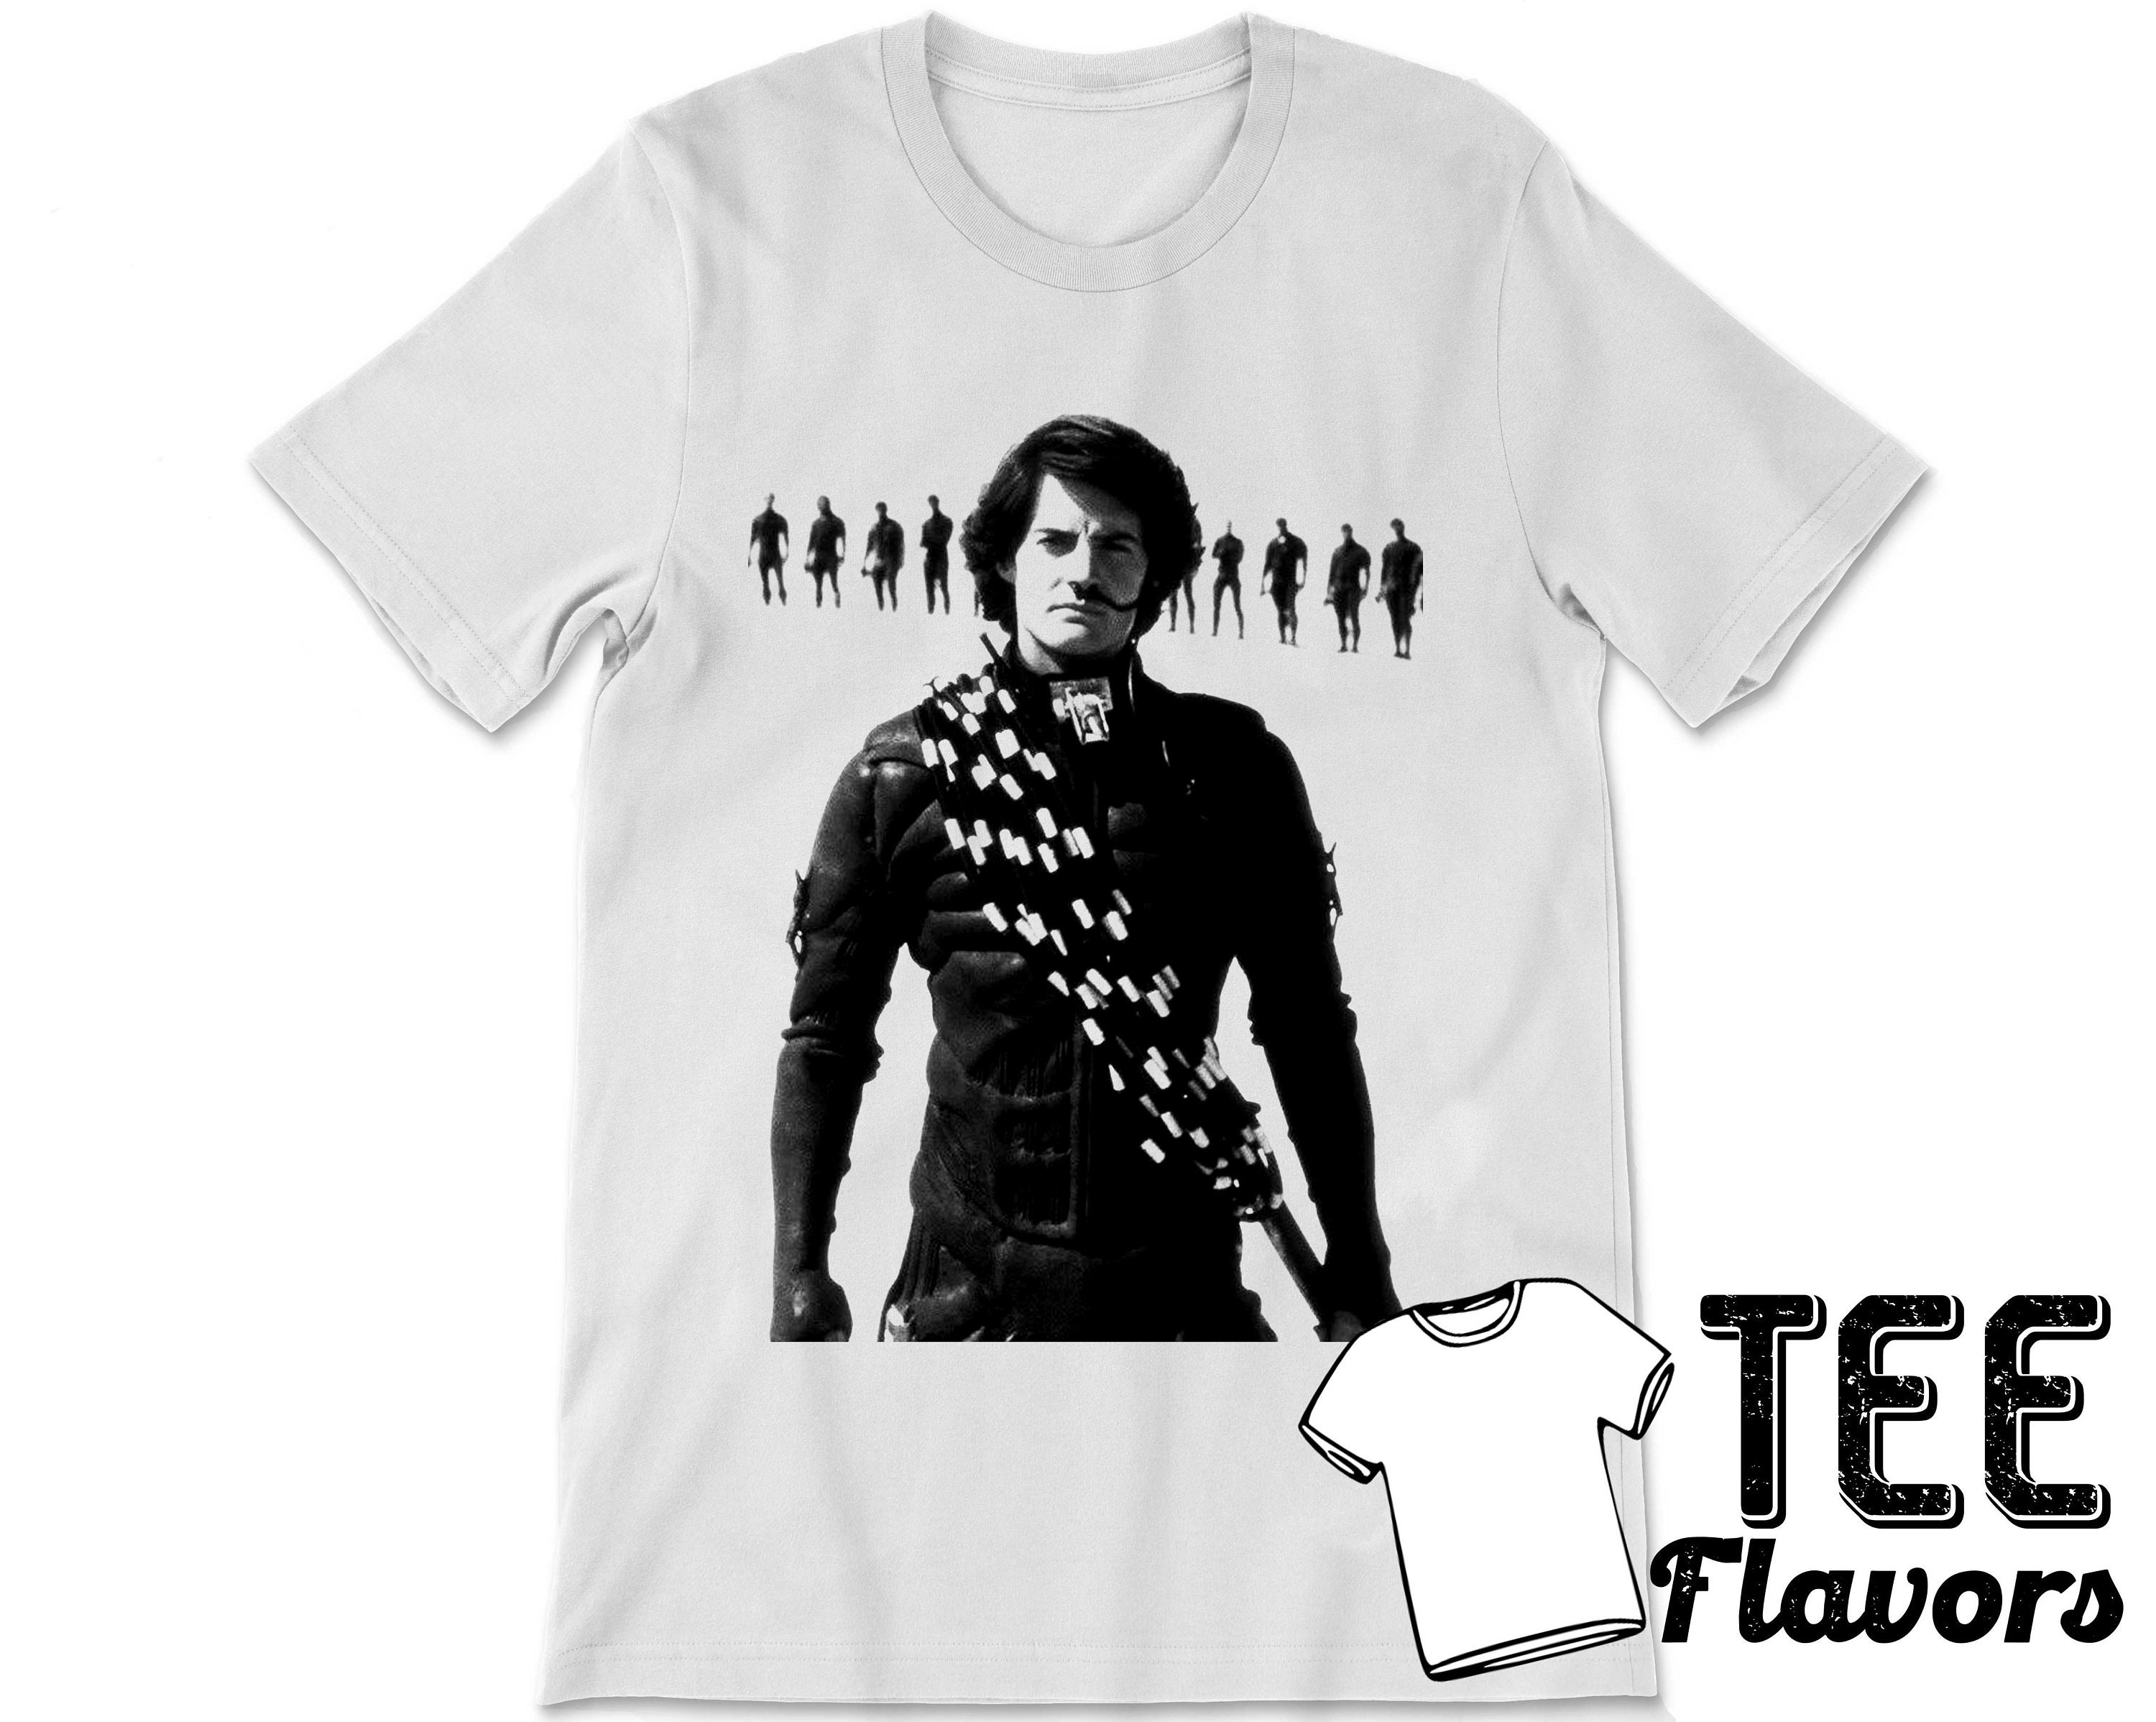 Paul Atreides Character From Dune Movie Tee / T-shirt - Etsy UK